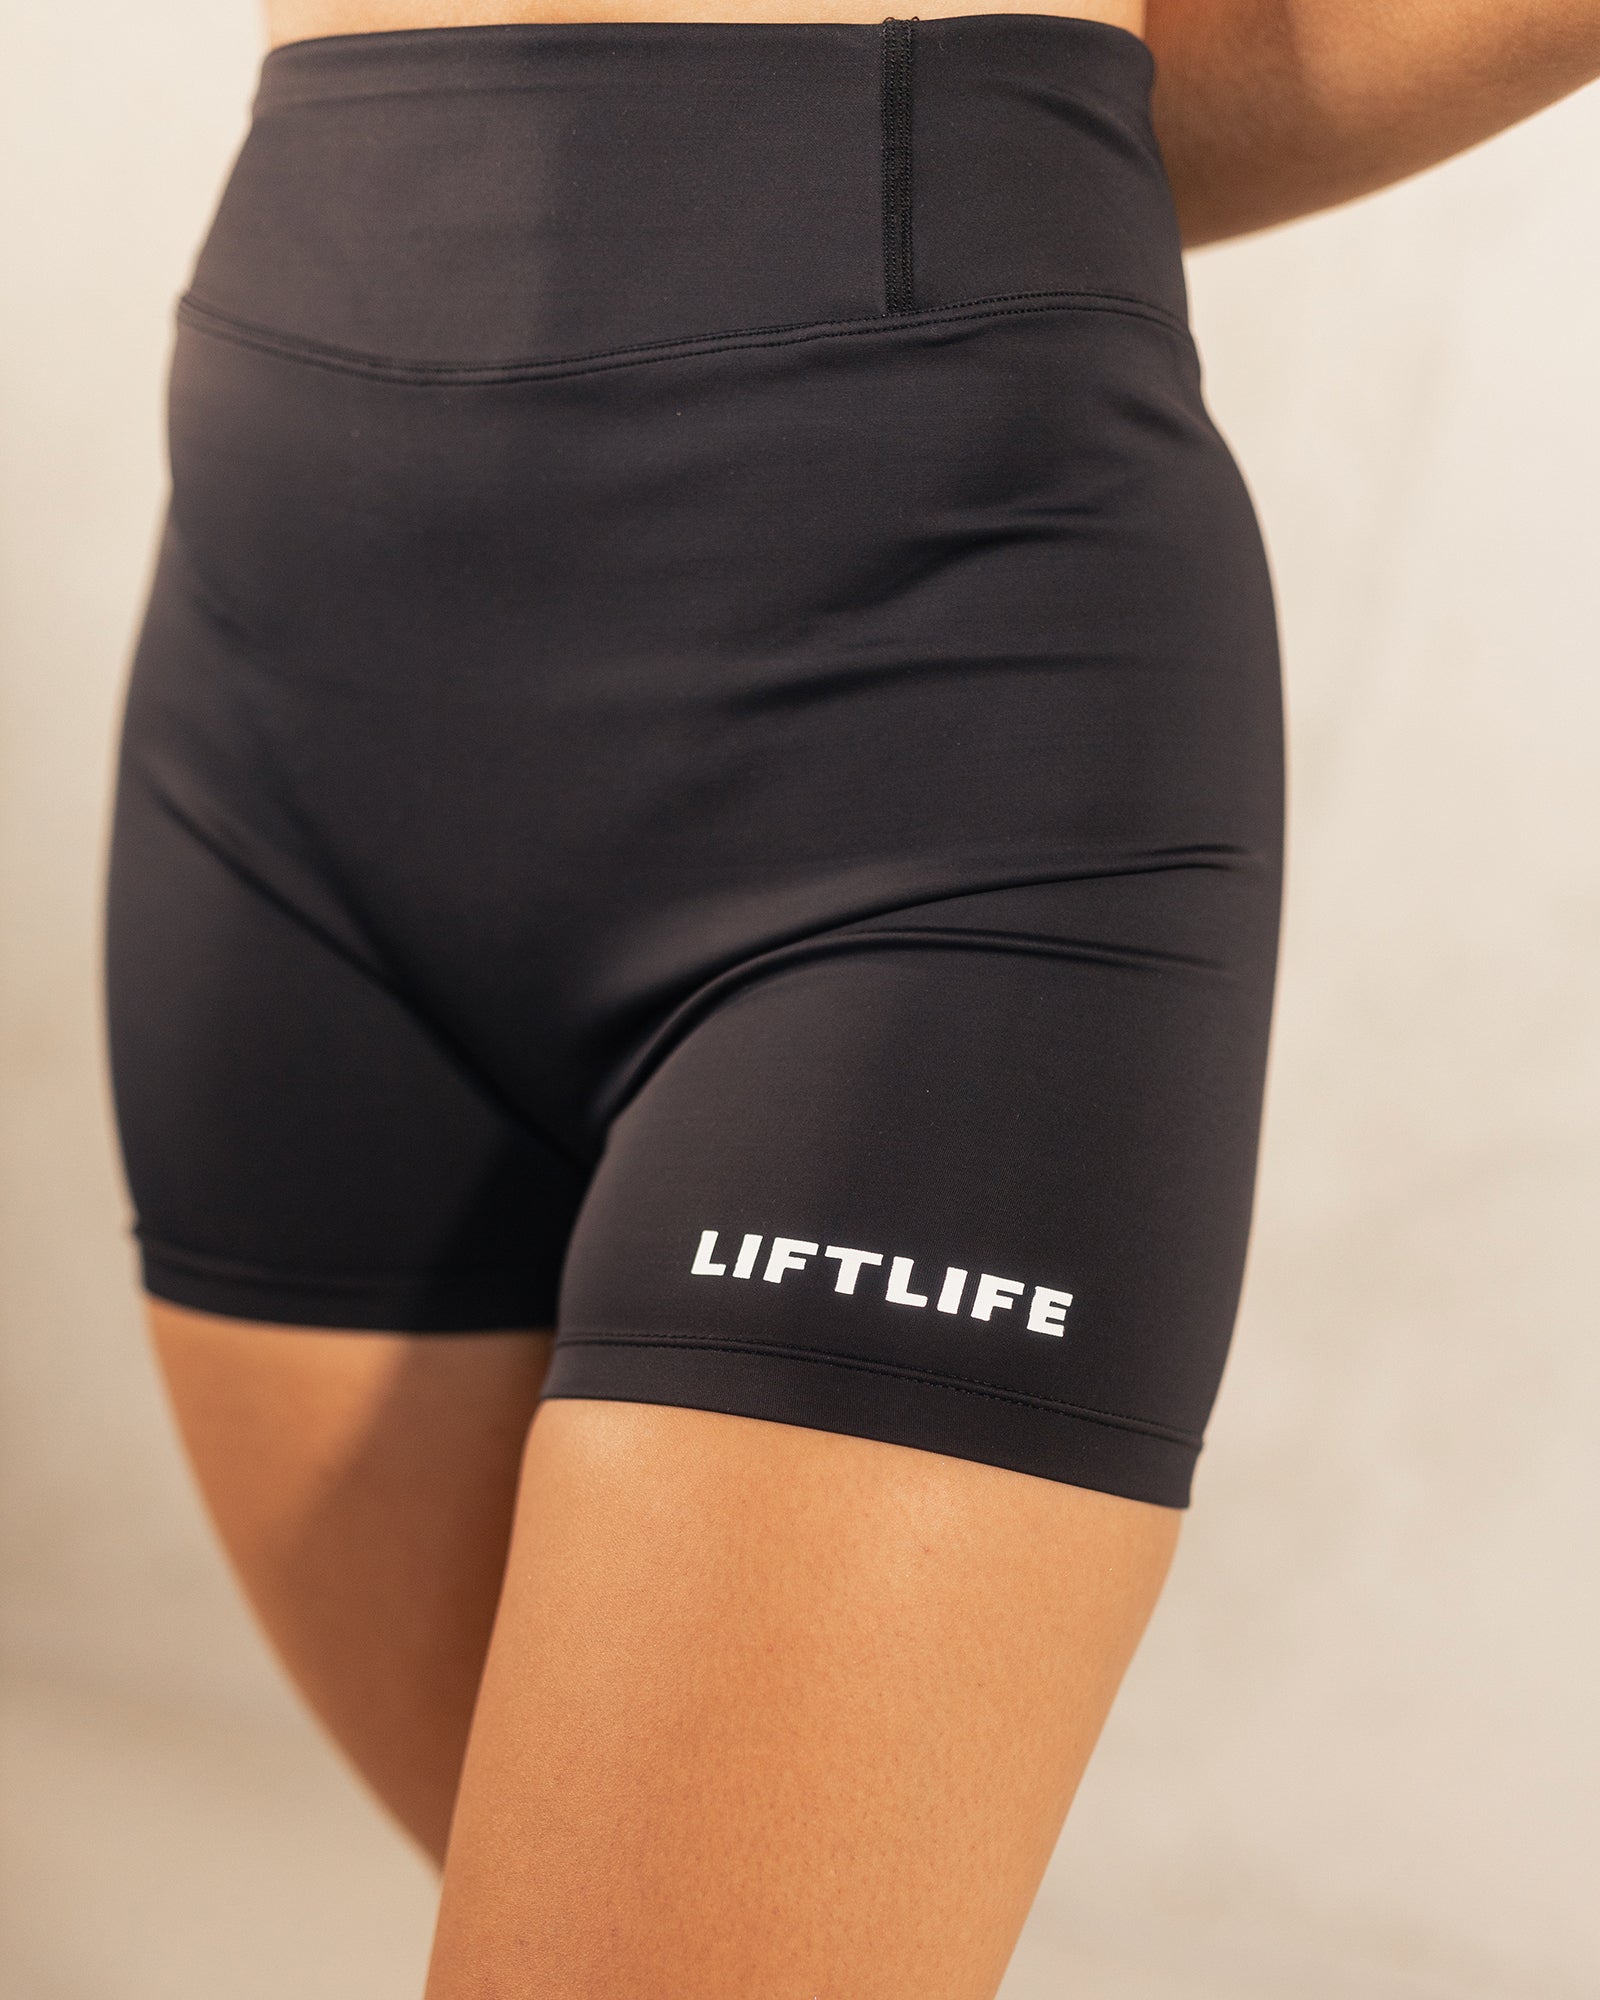 liftlife-inspire-shorts-1.jpg